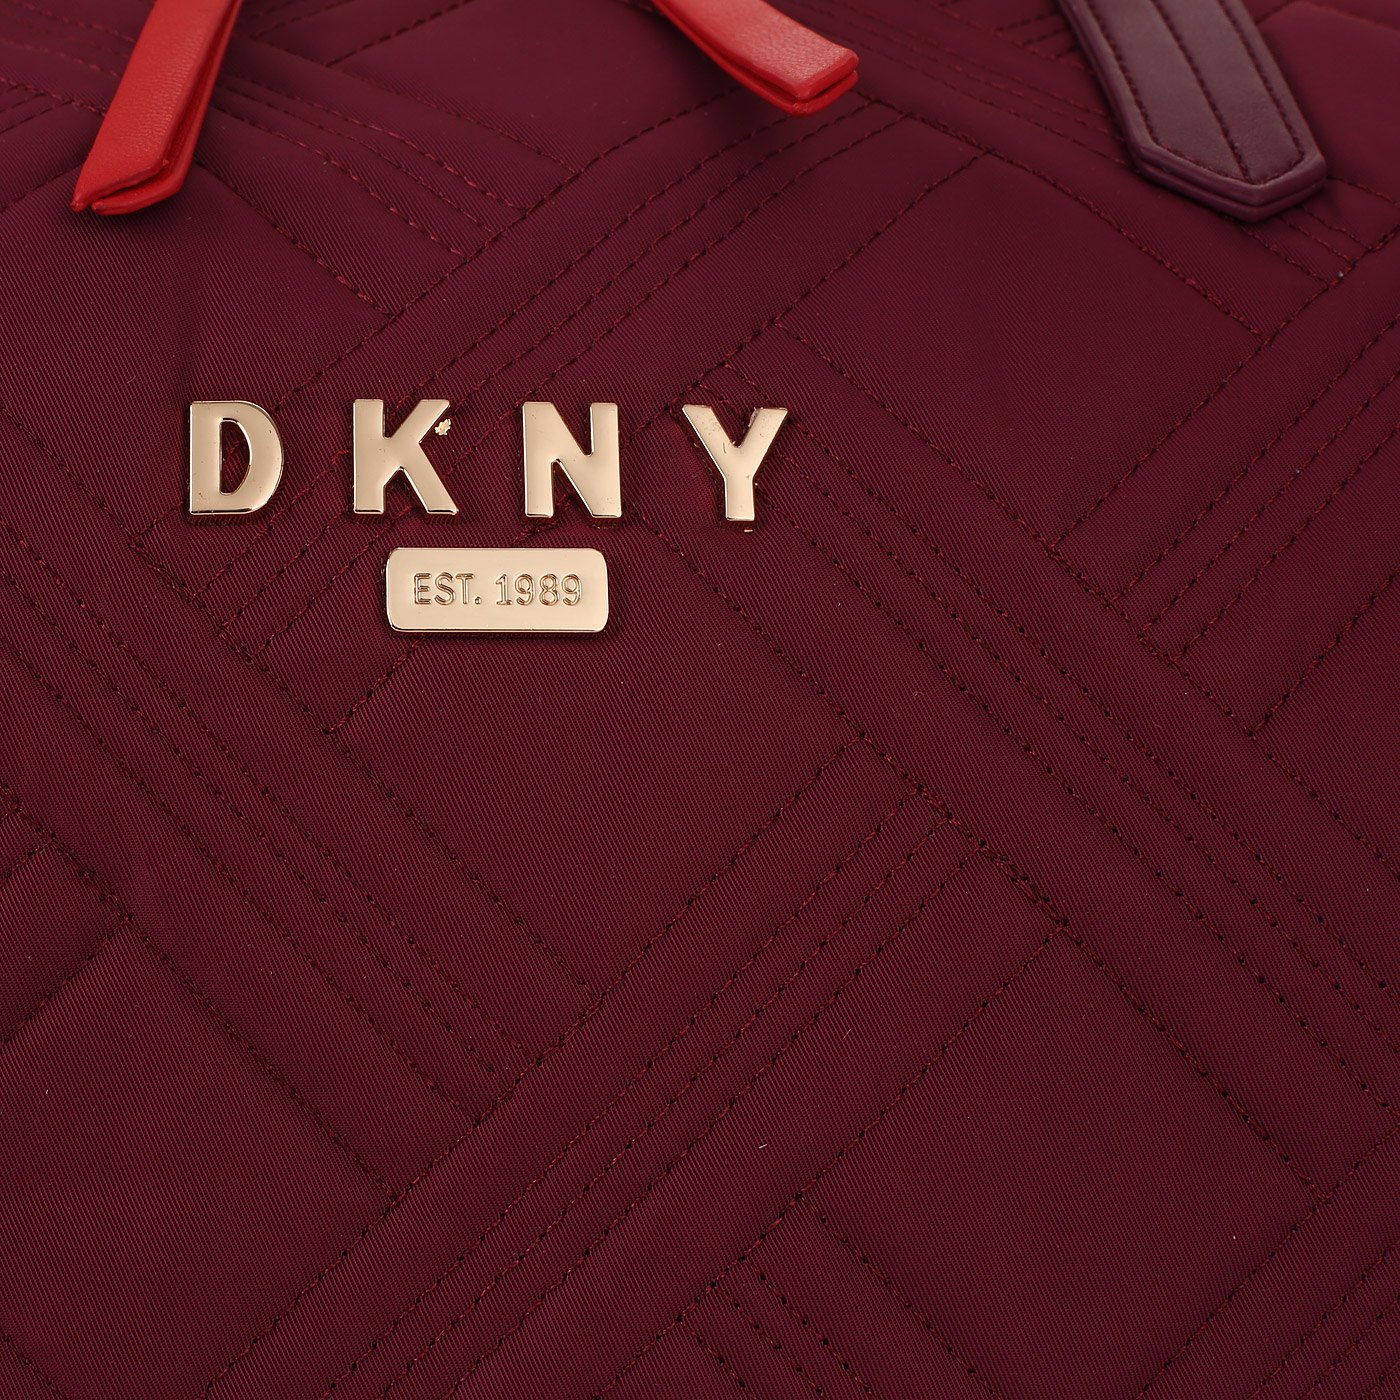 Дорожная сумка DKNY DKNY-327 Aphrodesia